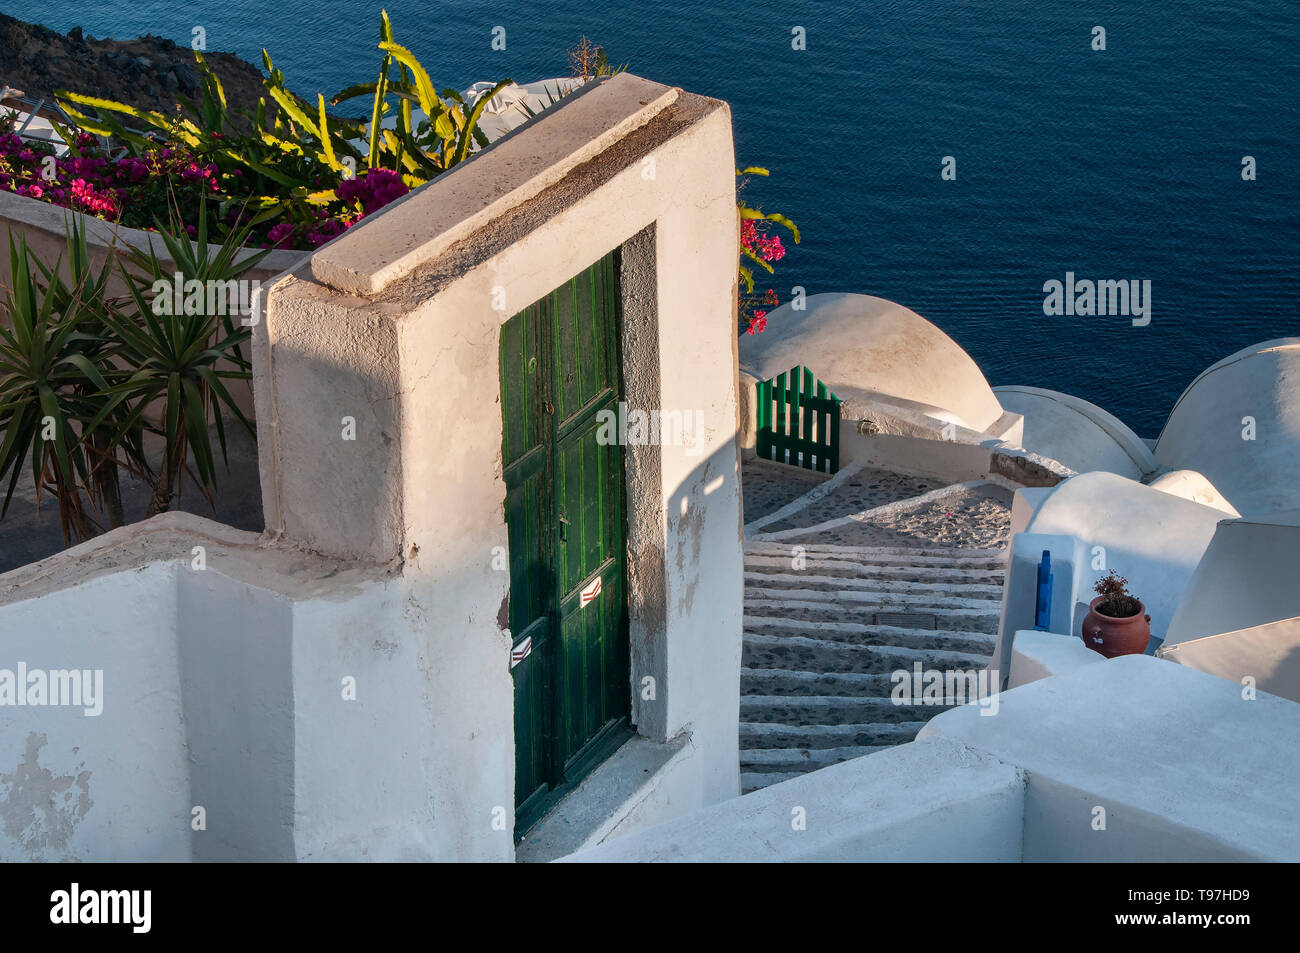 La scena del villaggio, Oia - Santorini, isole greche, Grecia Foto Stock